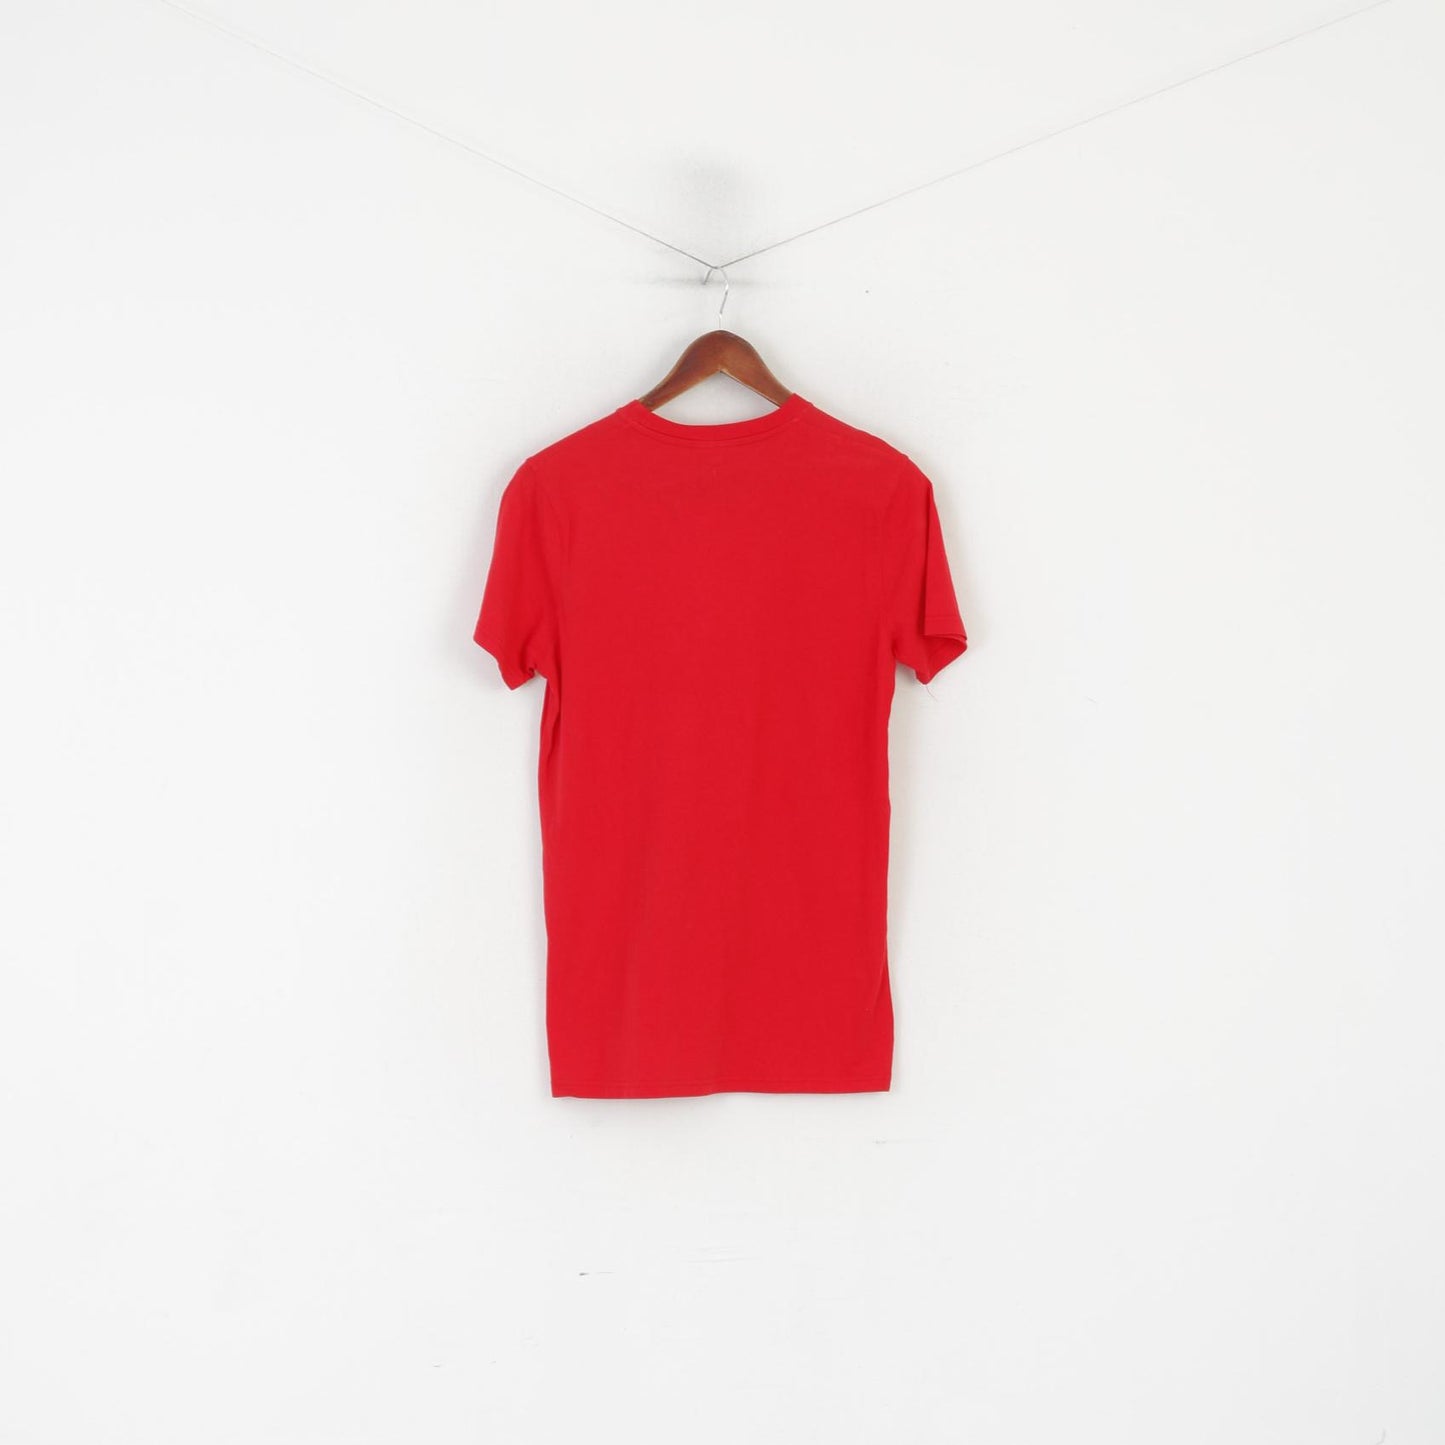 Camicia da uomo Bjorn Borg Maglietta unisex con girocollo grafico vintage in cotone rosso